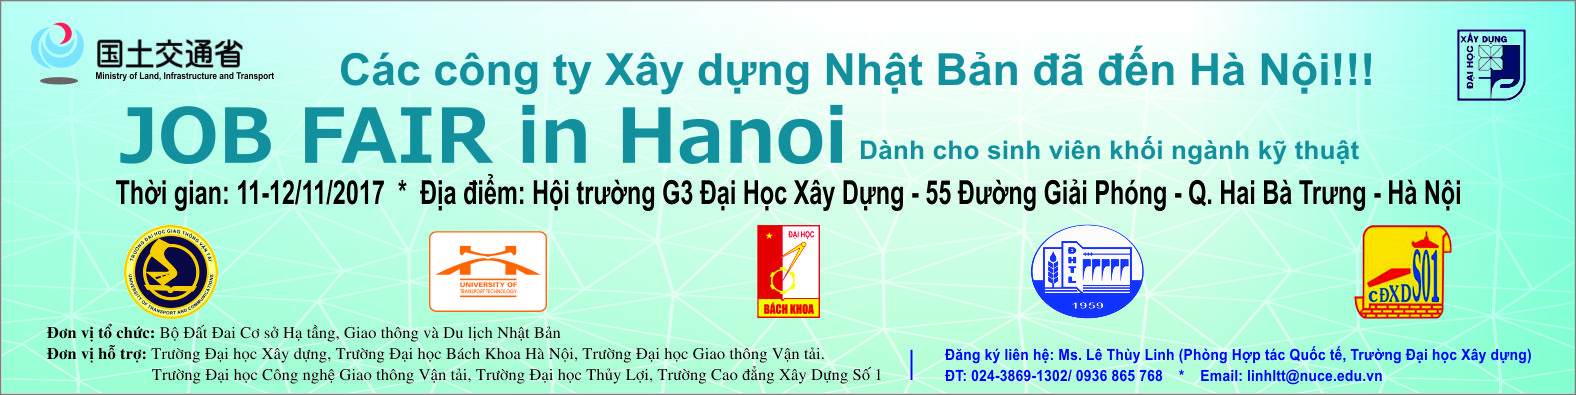 Thông báo ngày hội việc làm Nhật Bản – Job Fair in Hanoi